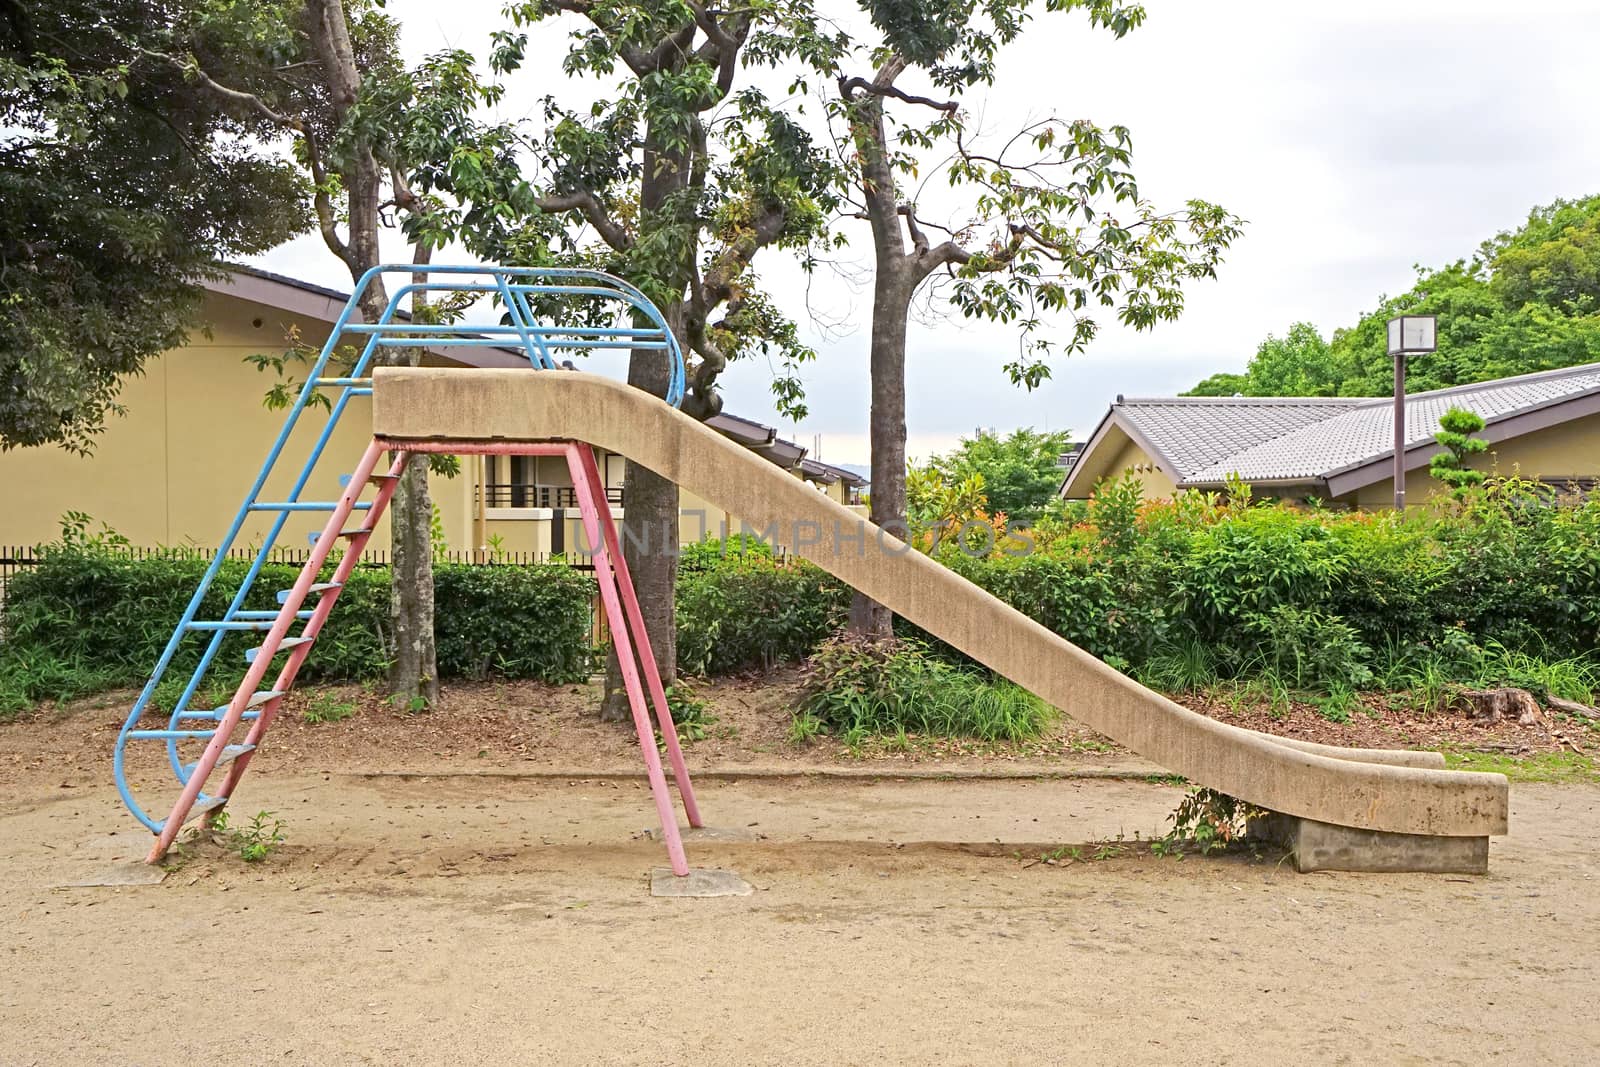 The retro children slide equipment in Japan outdoor playround